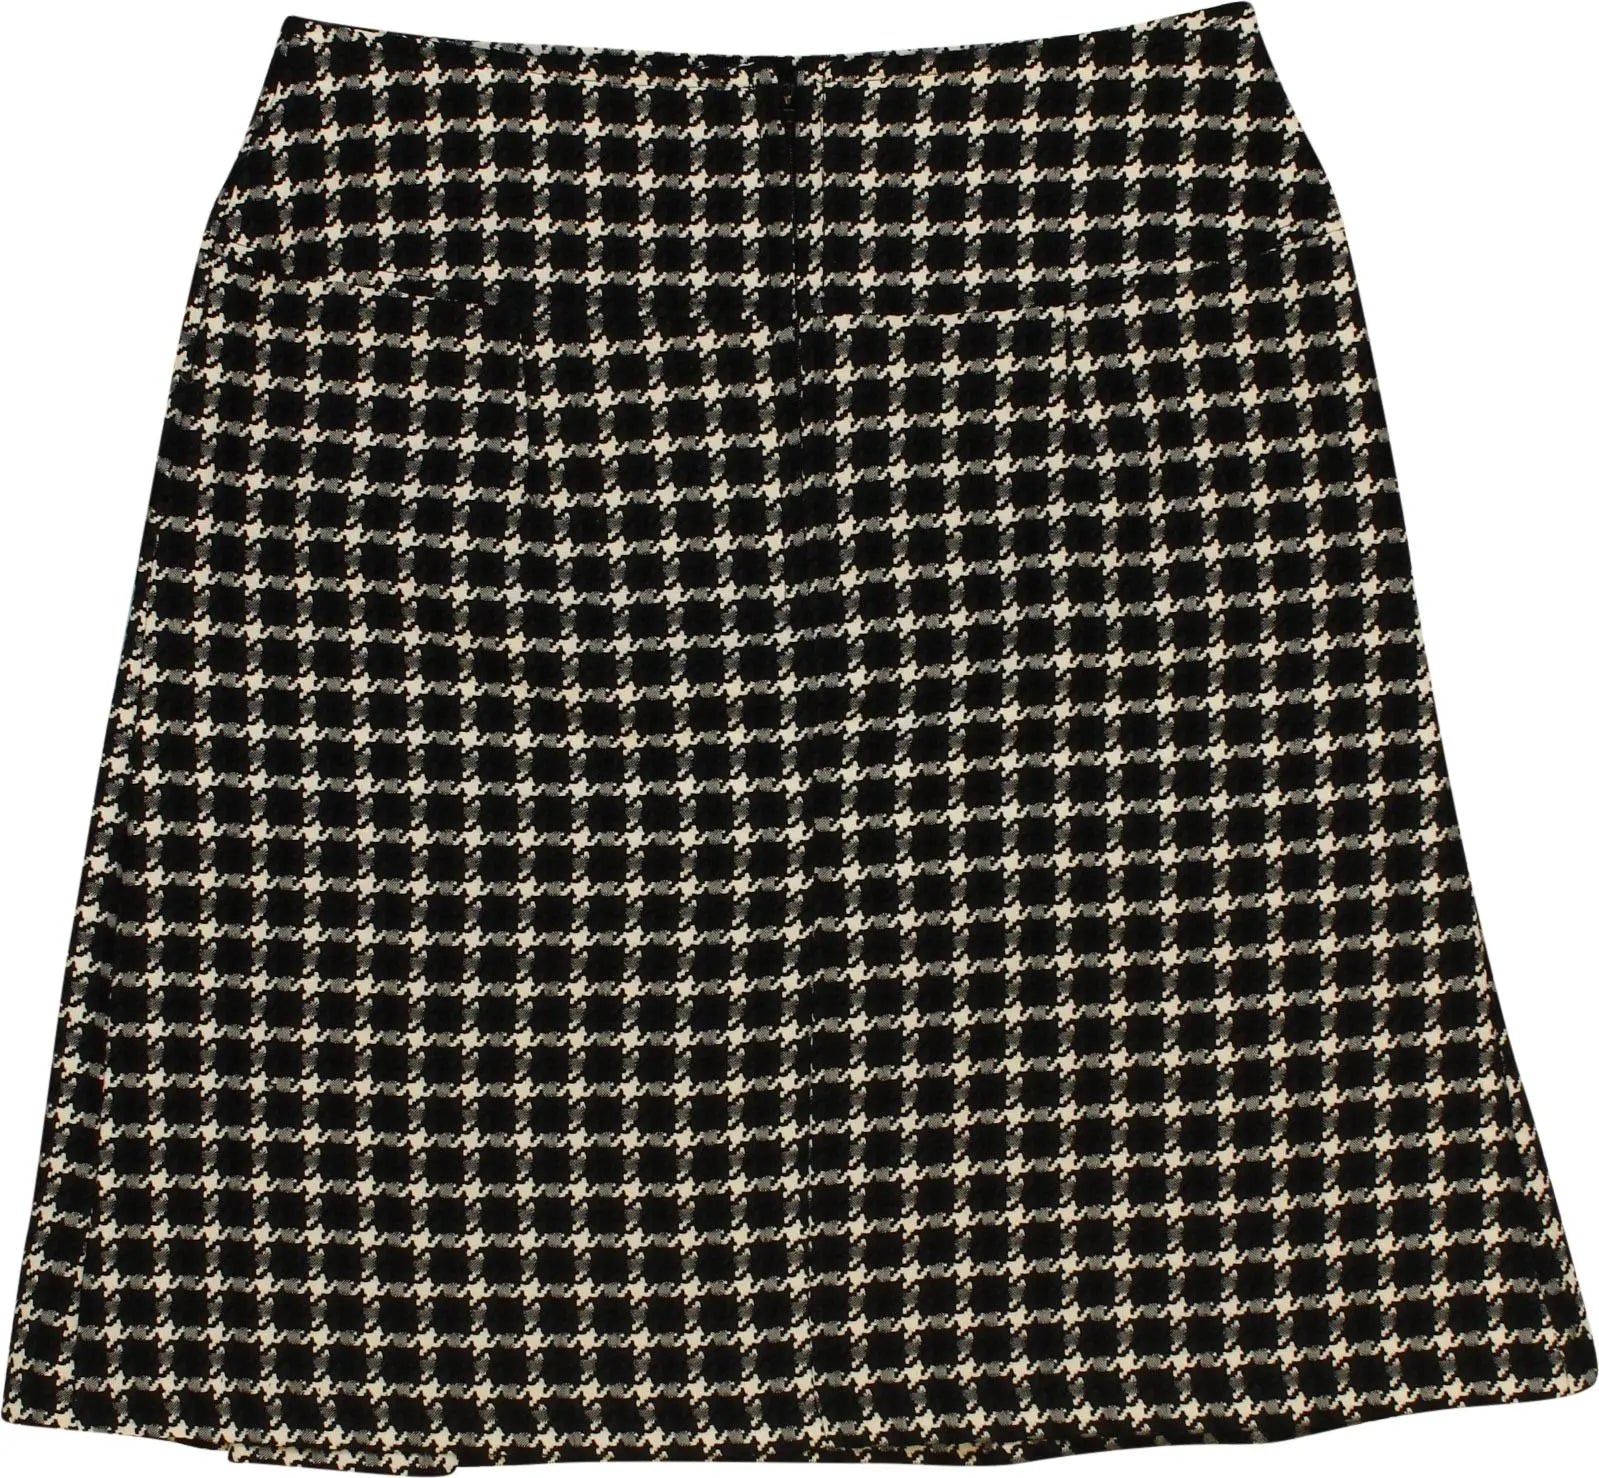 Miss Etam - Pied de Poule Skirt- ThriftTale.com - Vintage and second handclothing